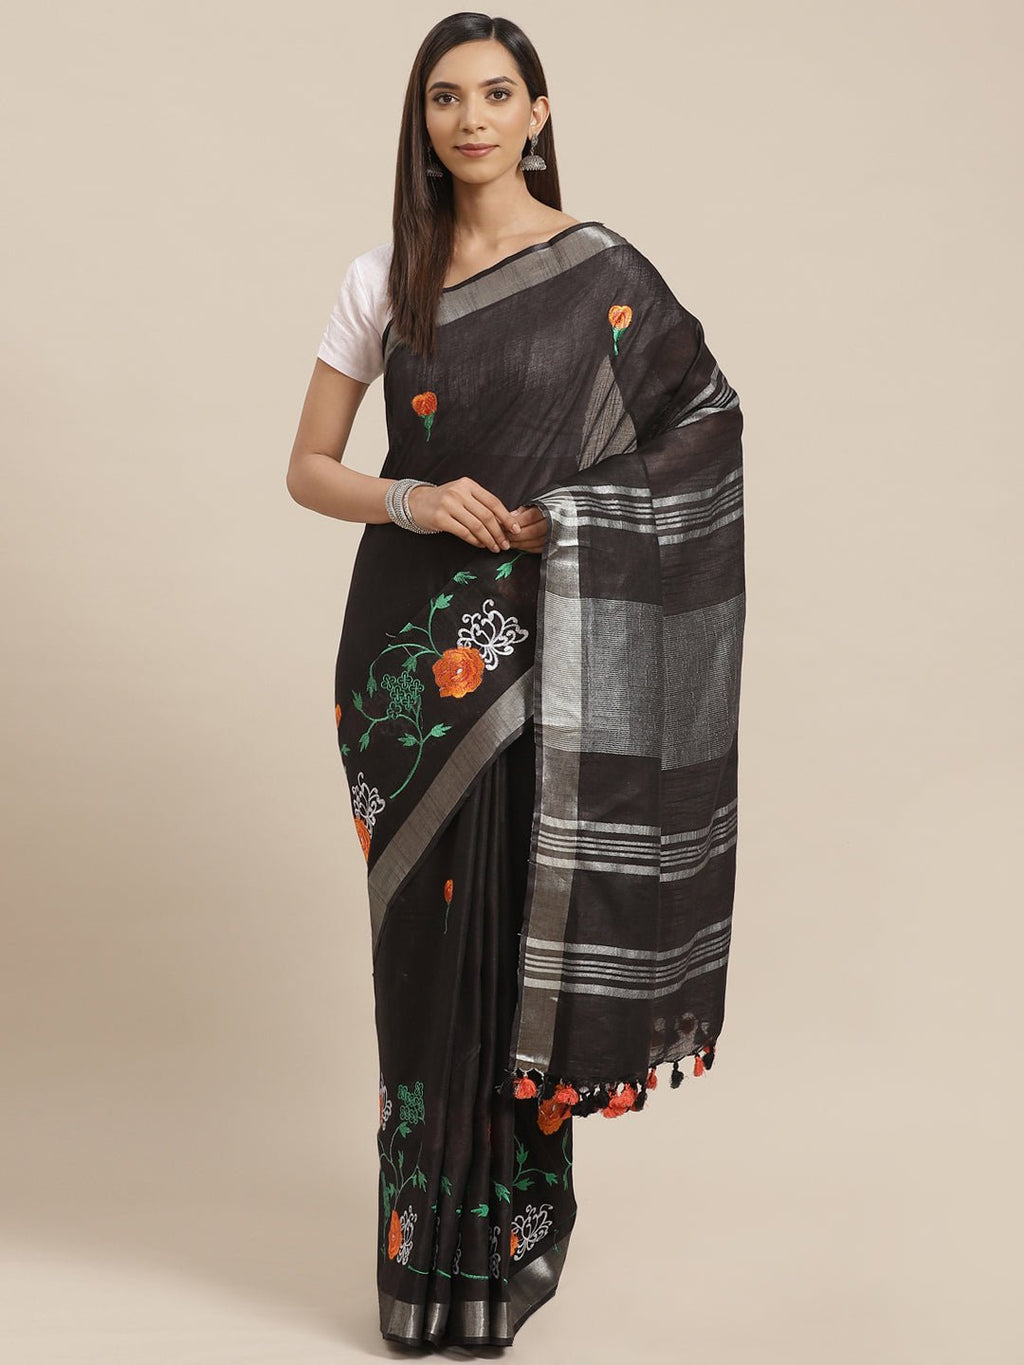 Black and Silver, Kalakari India Linen Woven Saree and Blouse ALBGSA0052 - Kalakari India